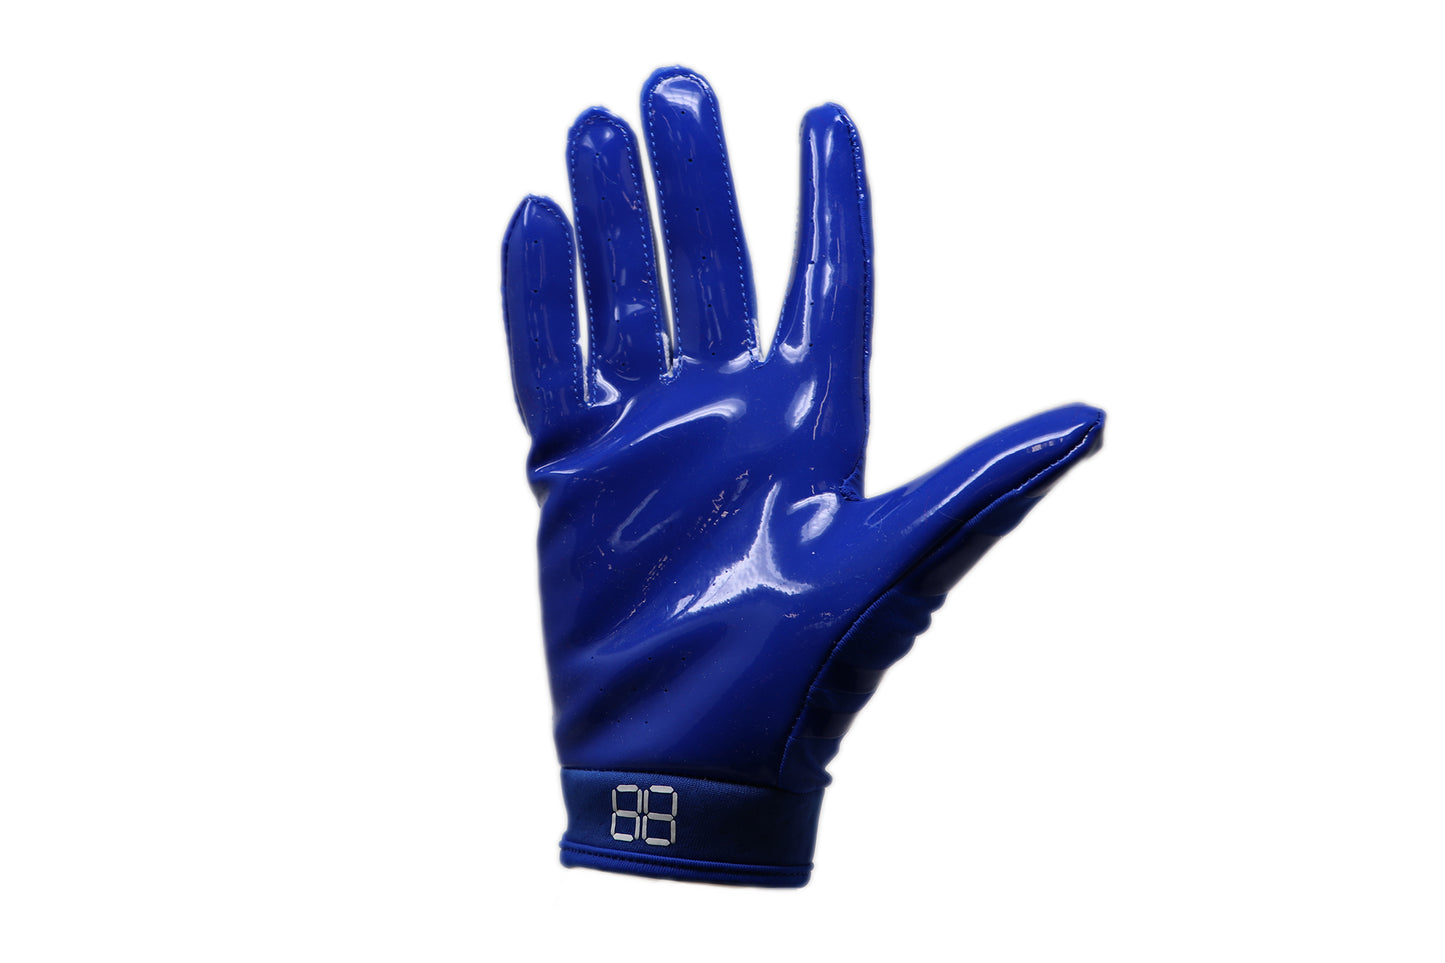 FRG-03 gants de football américain de pro receveur, RE,DB ,RB, Bleu